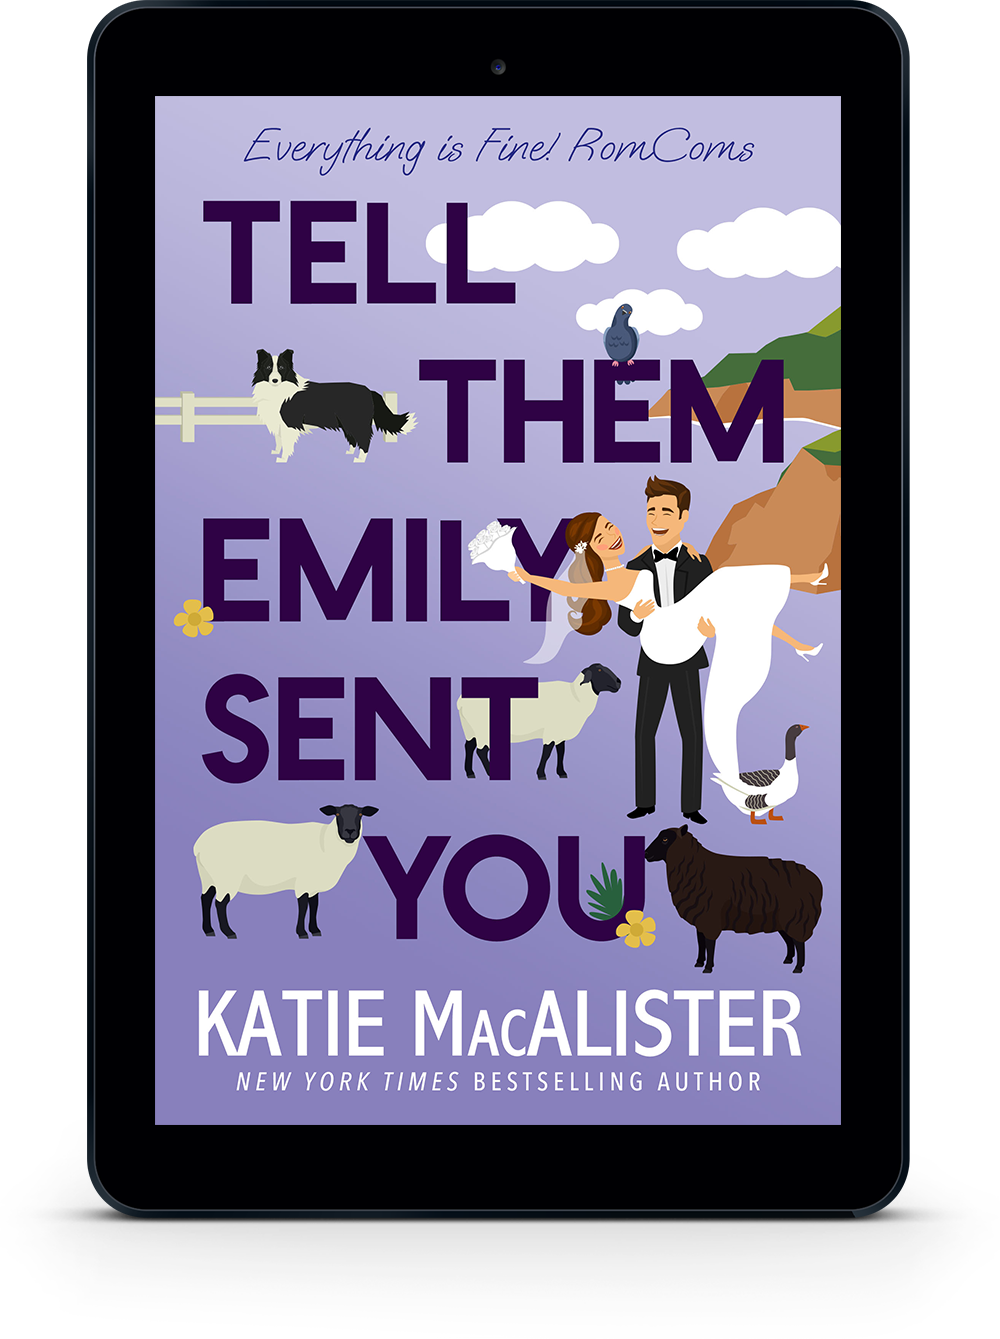 Tell Them Emily Sent You [E-book]